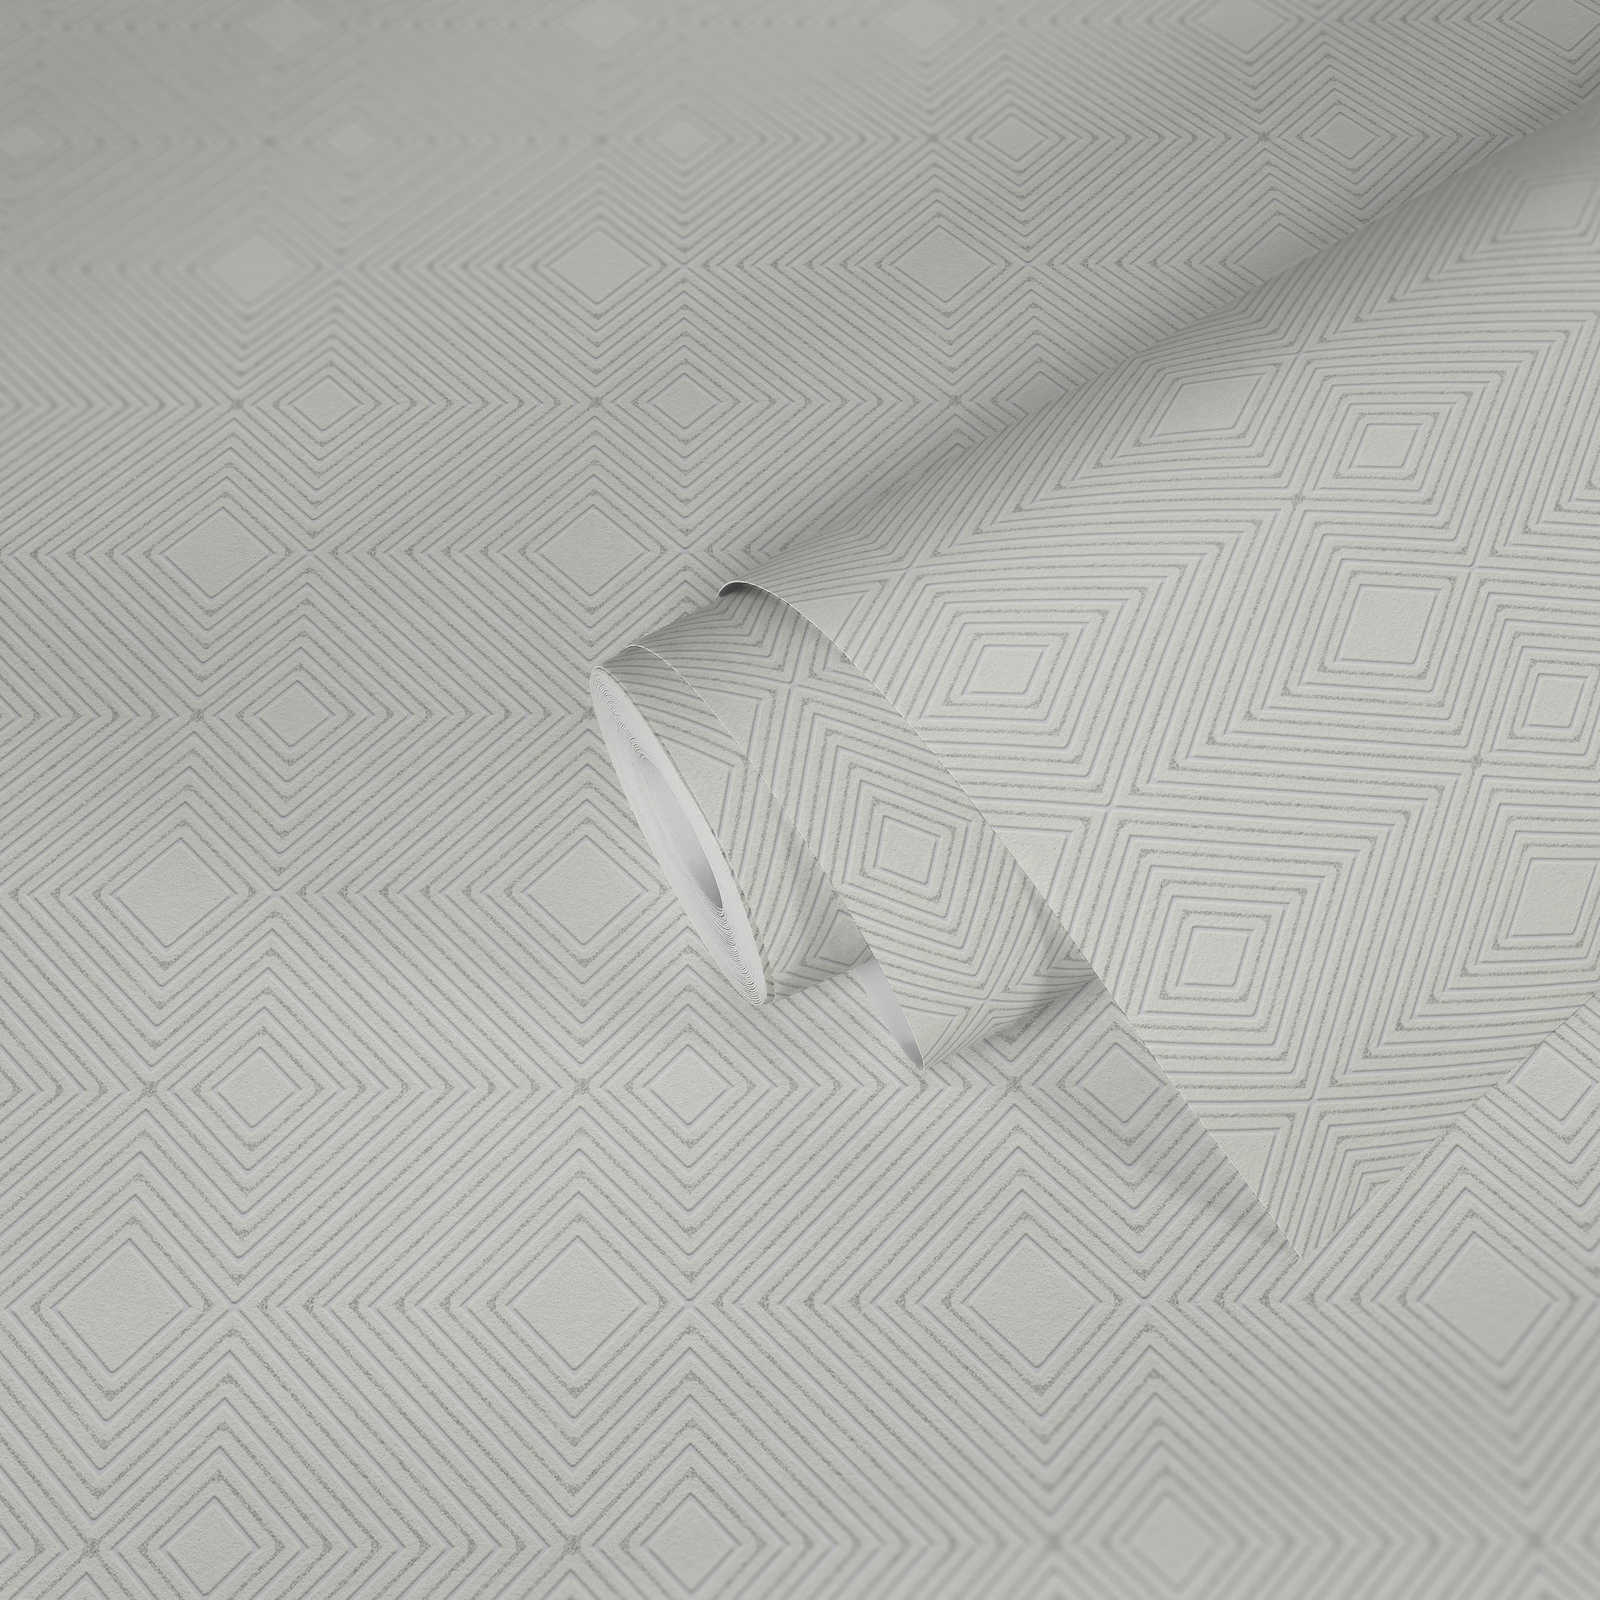             Tapete mit geometrischem Muster & Metallic Effekt – Weiß
        